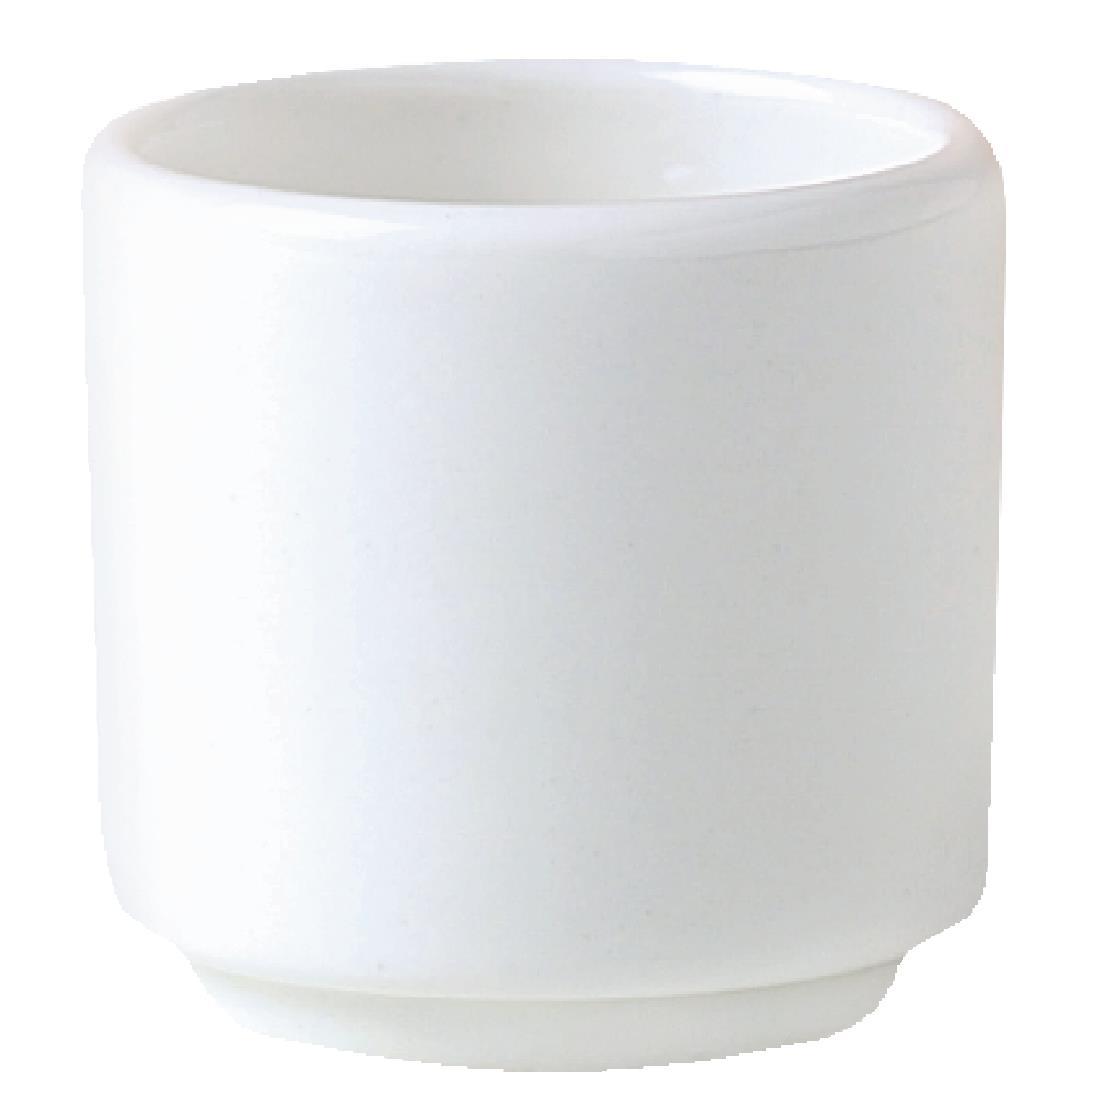 Steelite Monaco White Mandarin Egg Cups 47mm (Pack of 12) - V6821  - 1